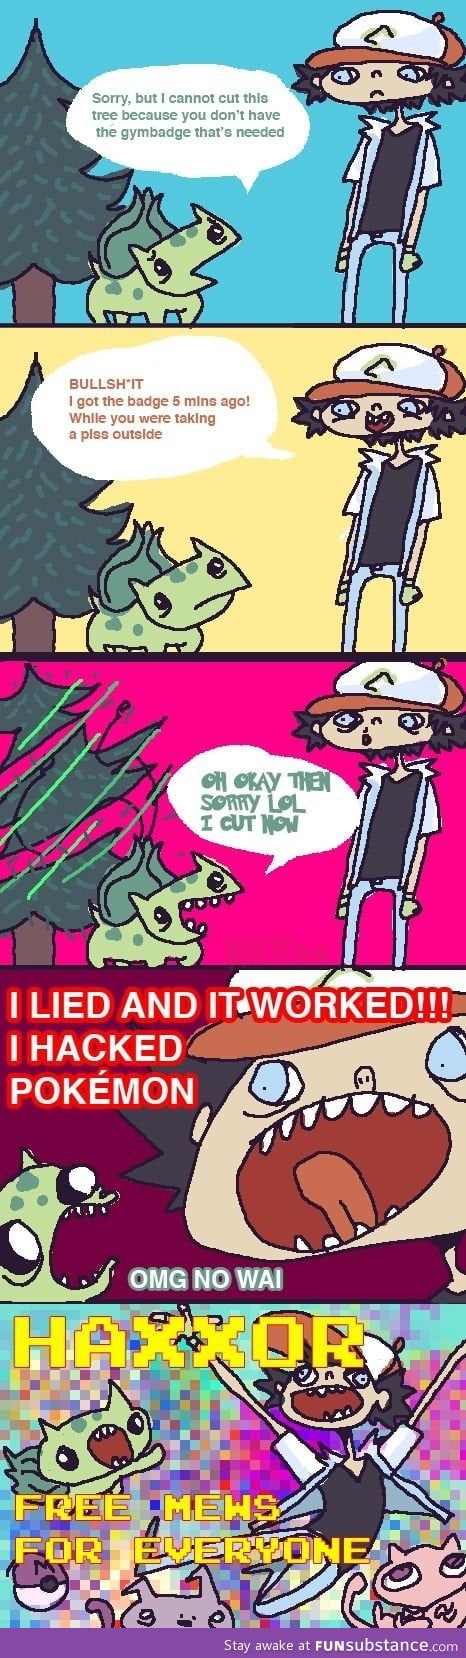 How to hack pokemon